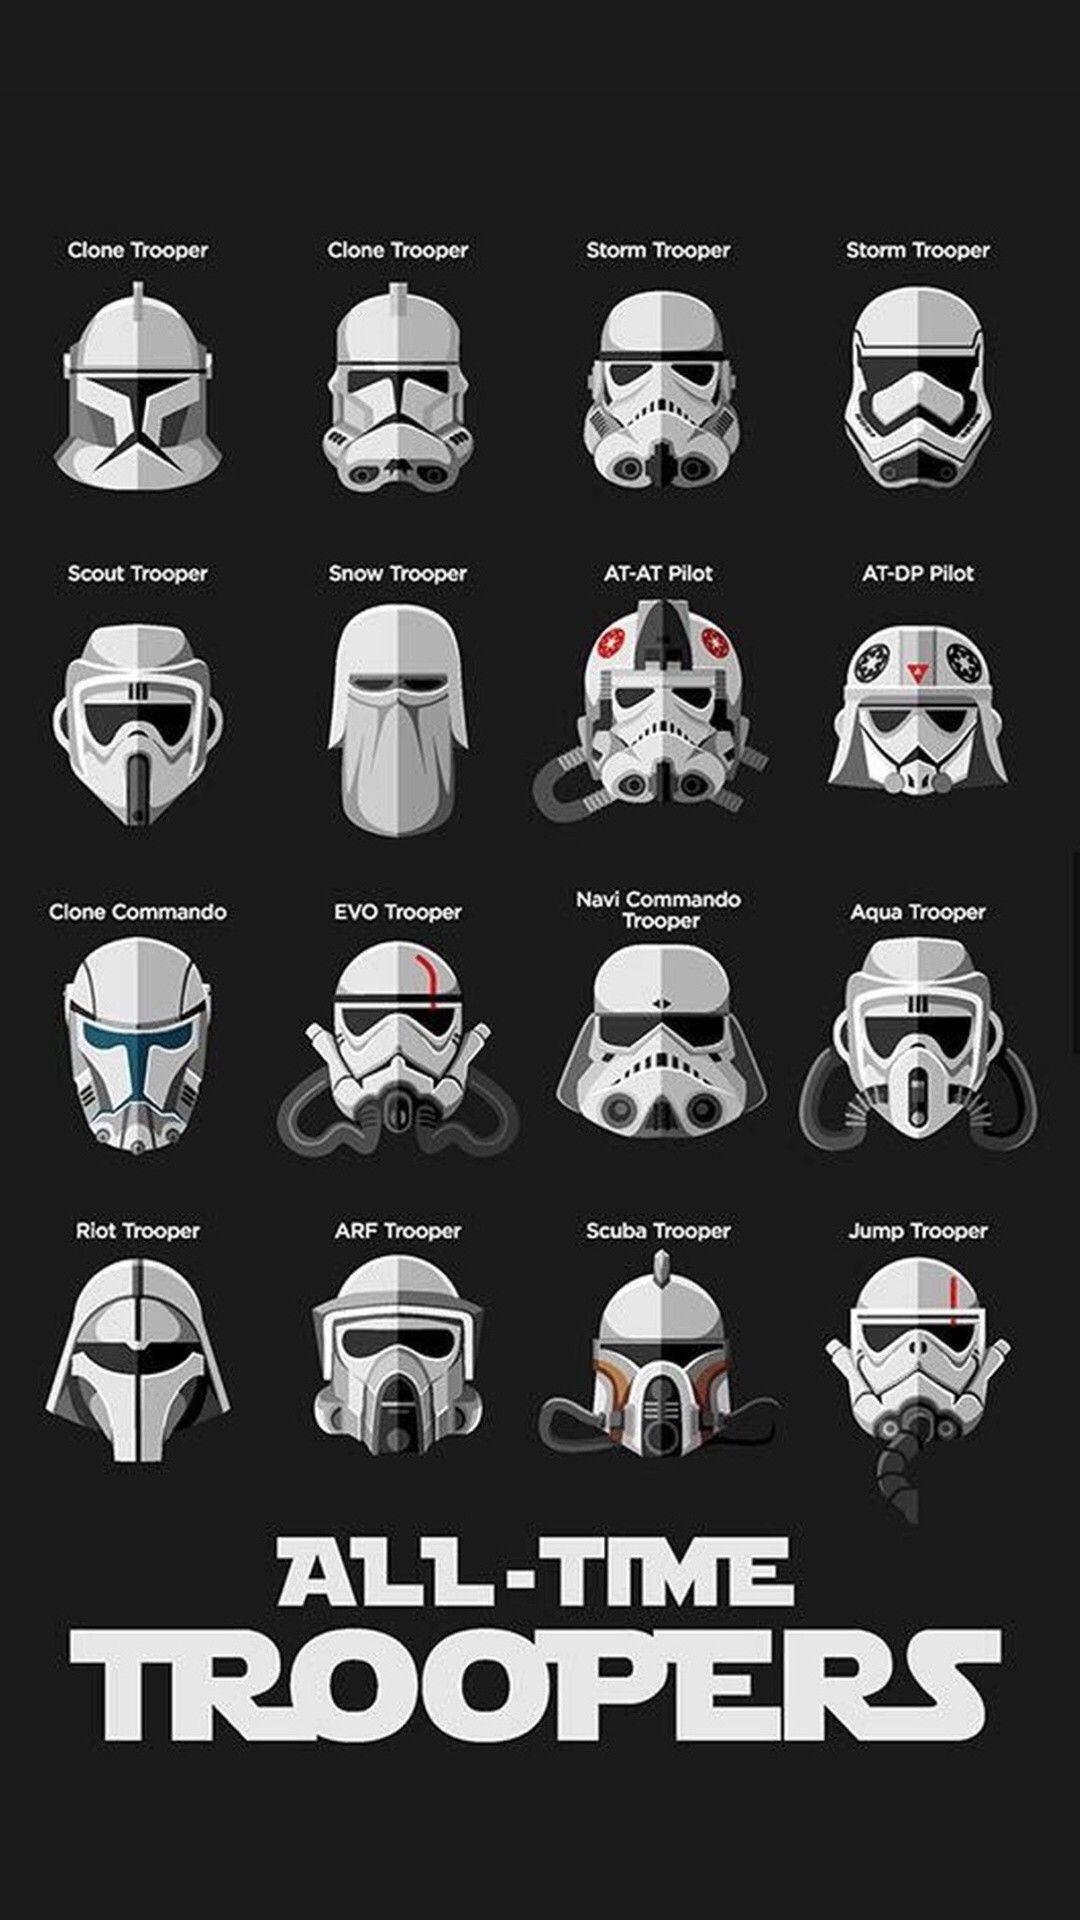 Clone Trooper Helmet Wallpaper Free Clone Trooper Helmet Background